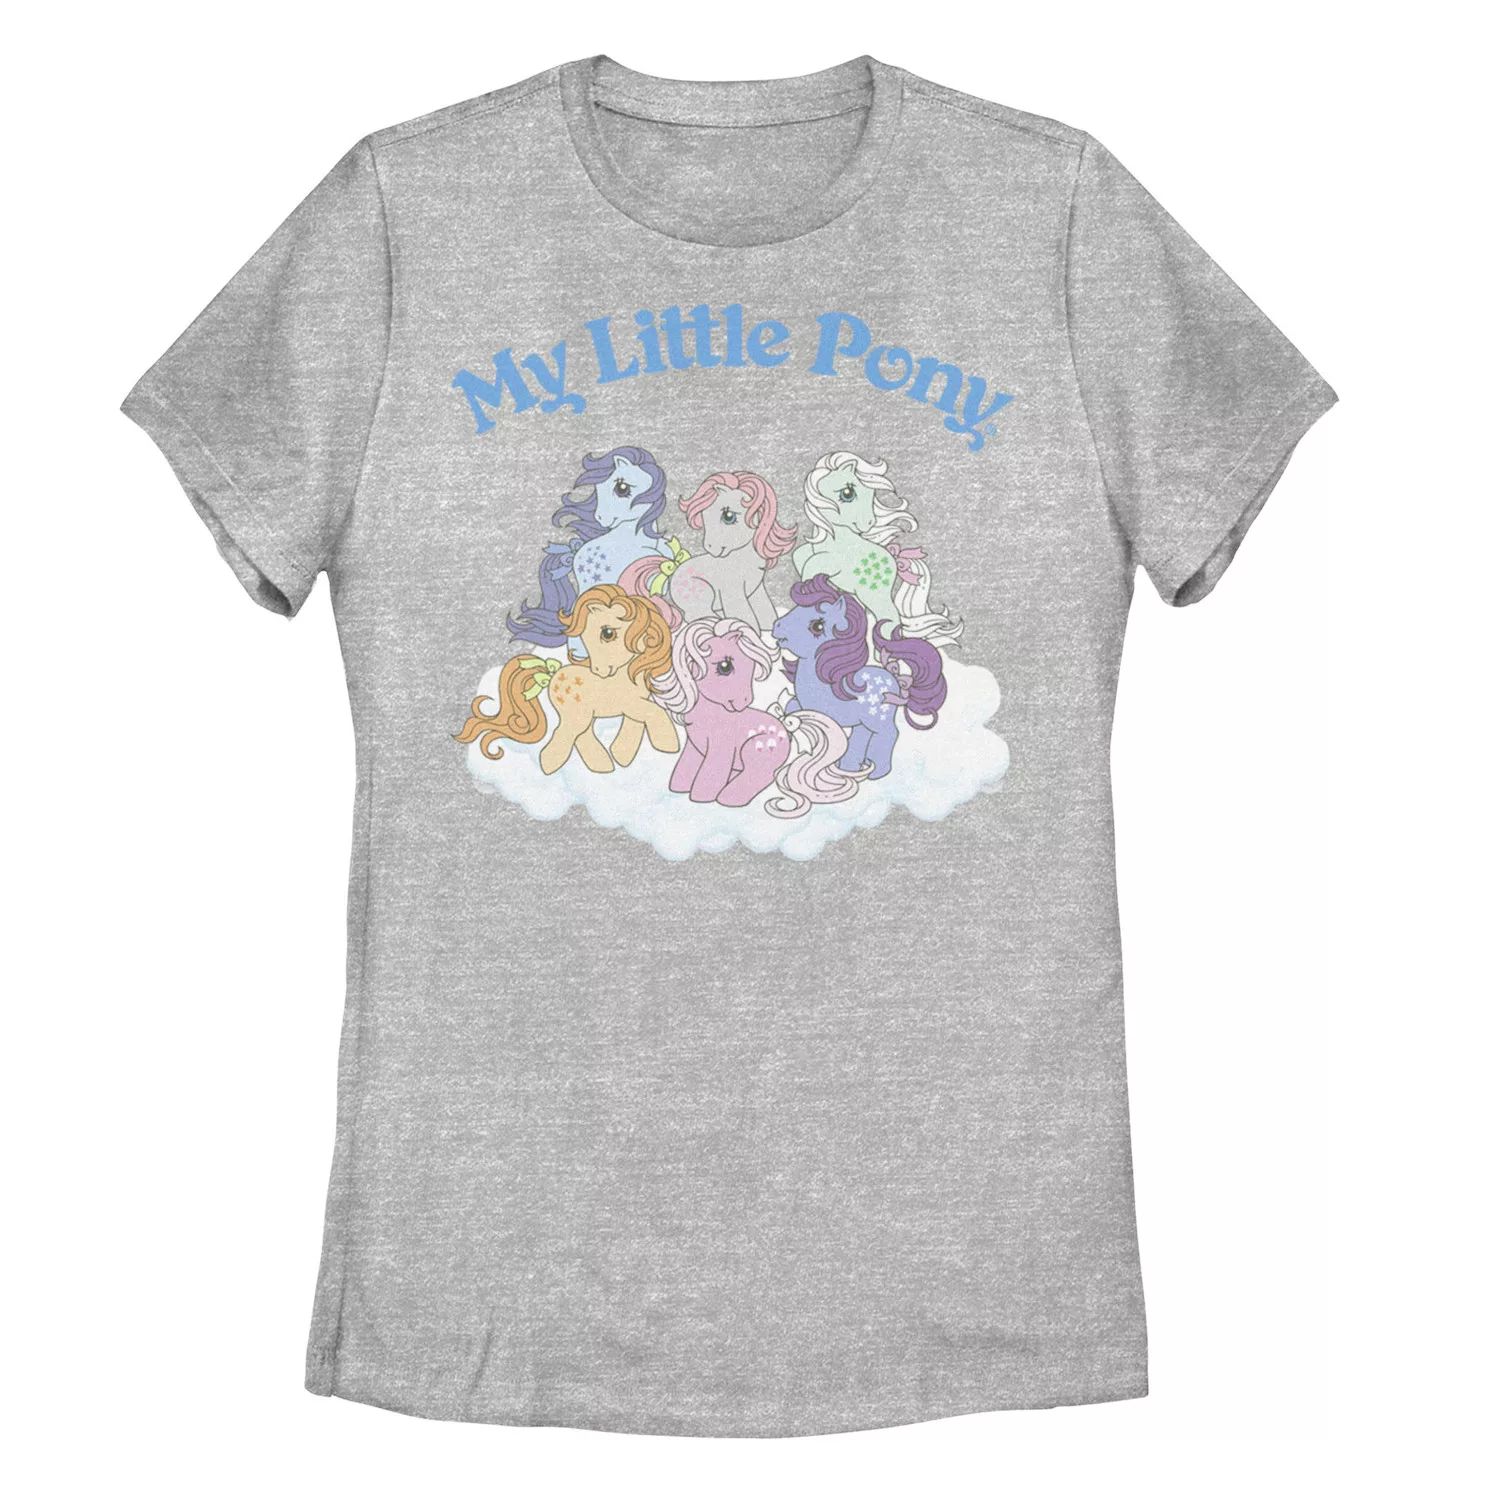 Детская классическая футболка с рисунком My Little Pony Group Shot My Little Pony футболка с рисунком my little pony butterscotch для девочек 7–16 лет my little pony